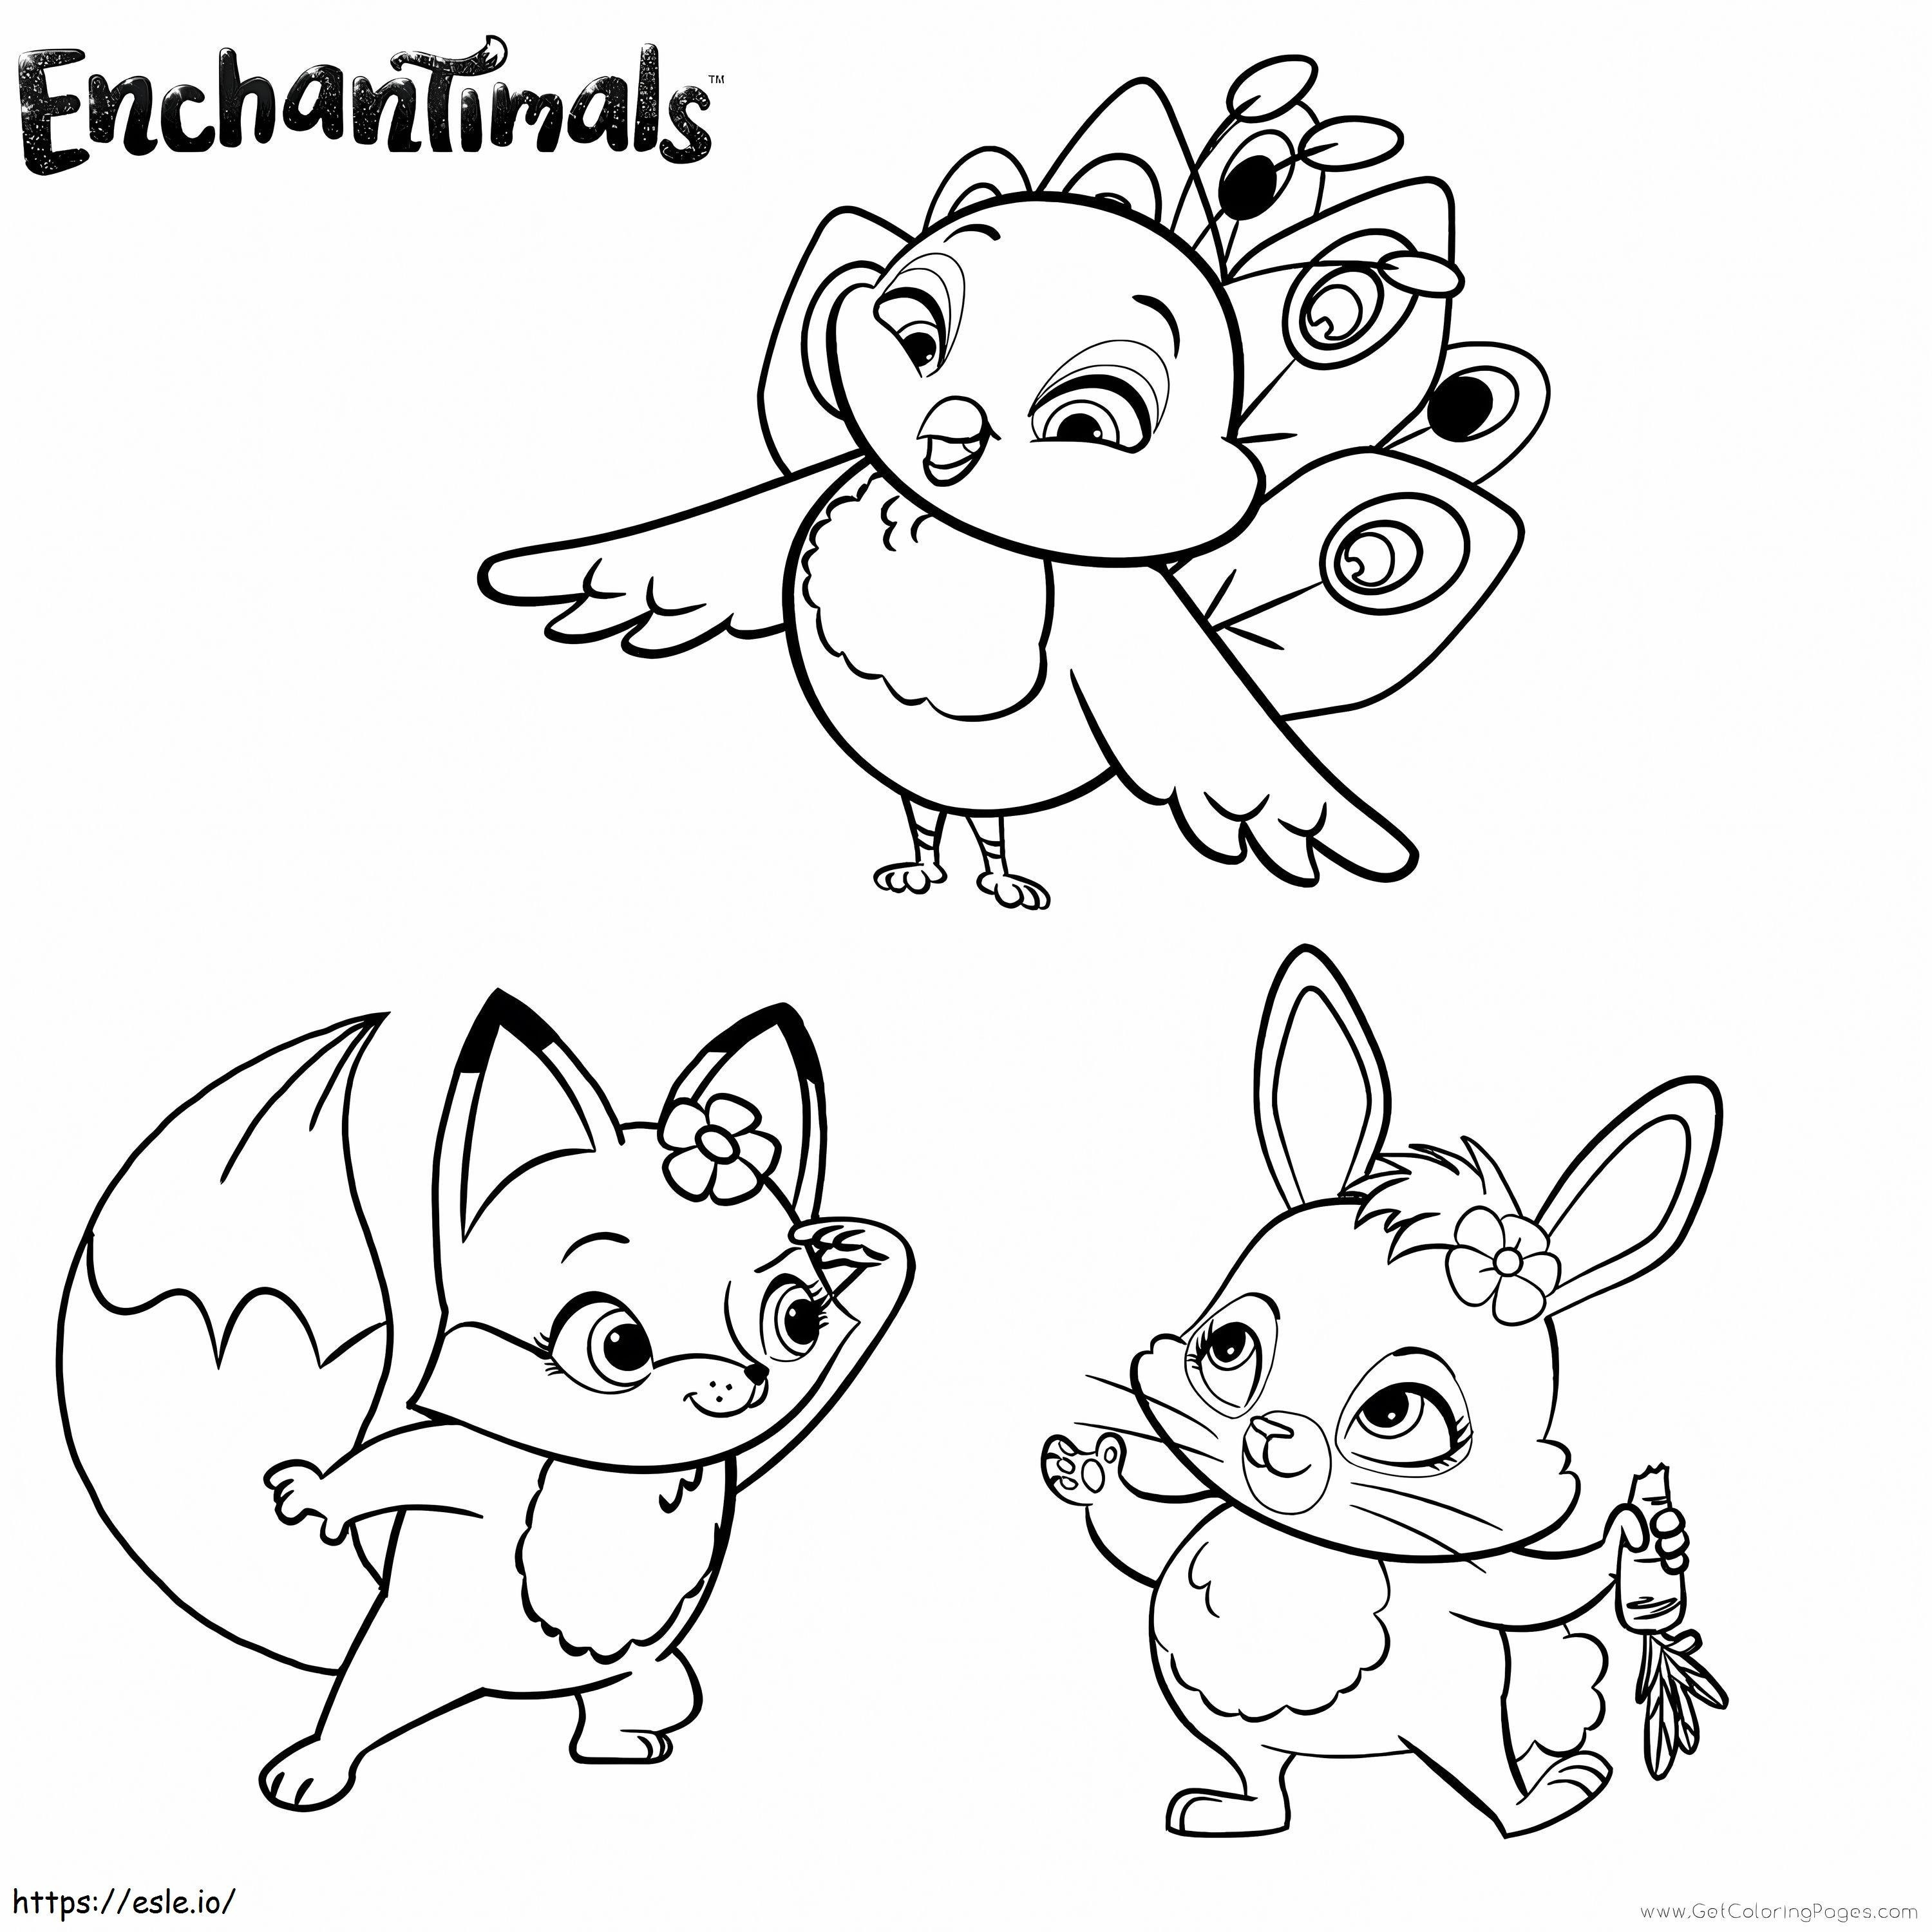 Animais Enchantimals para colorir